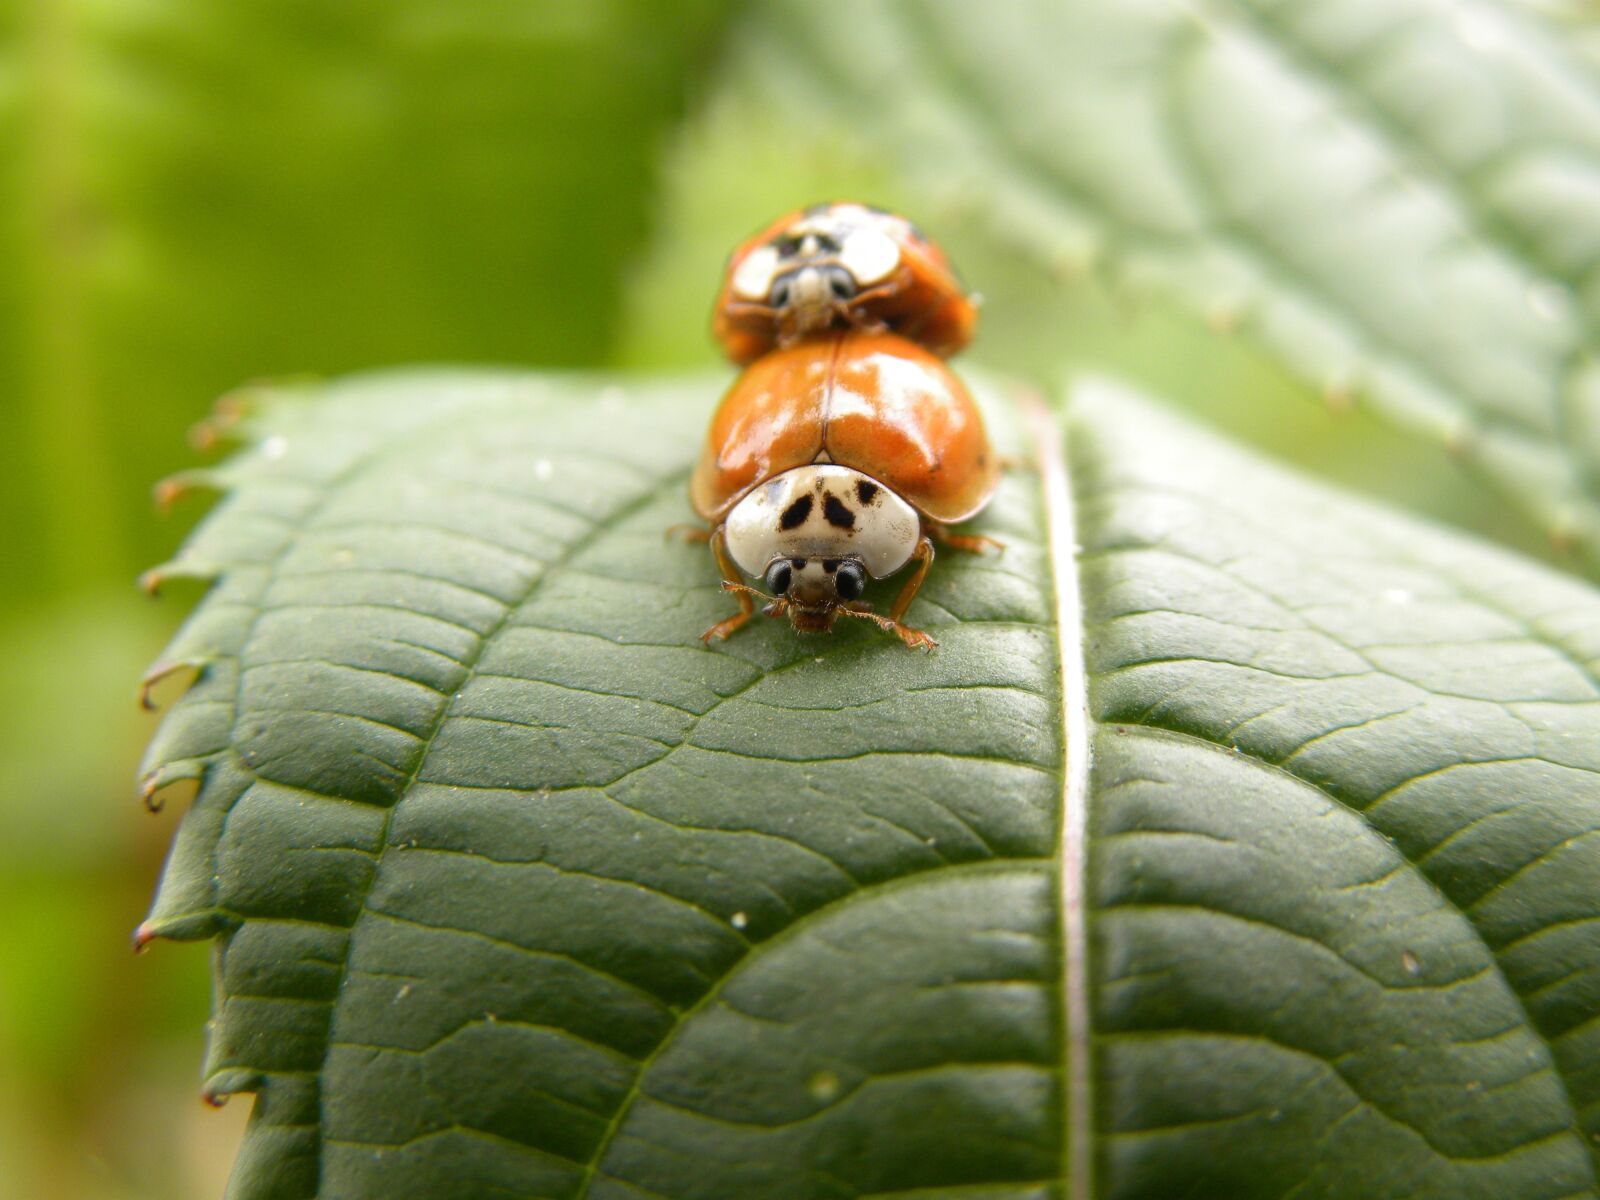 Nikon Coolpix P90 sample photo. Beetle, macro, ladybug photography